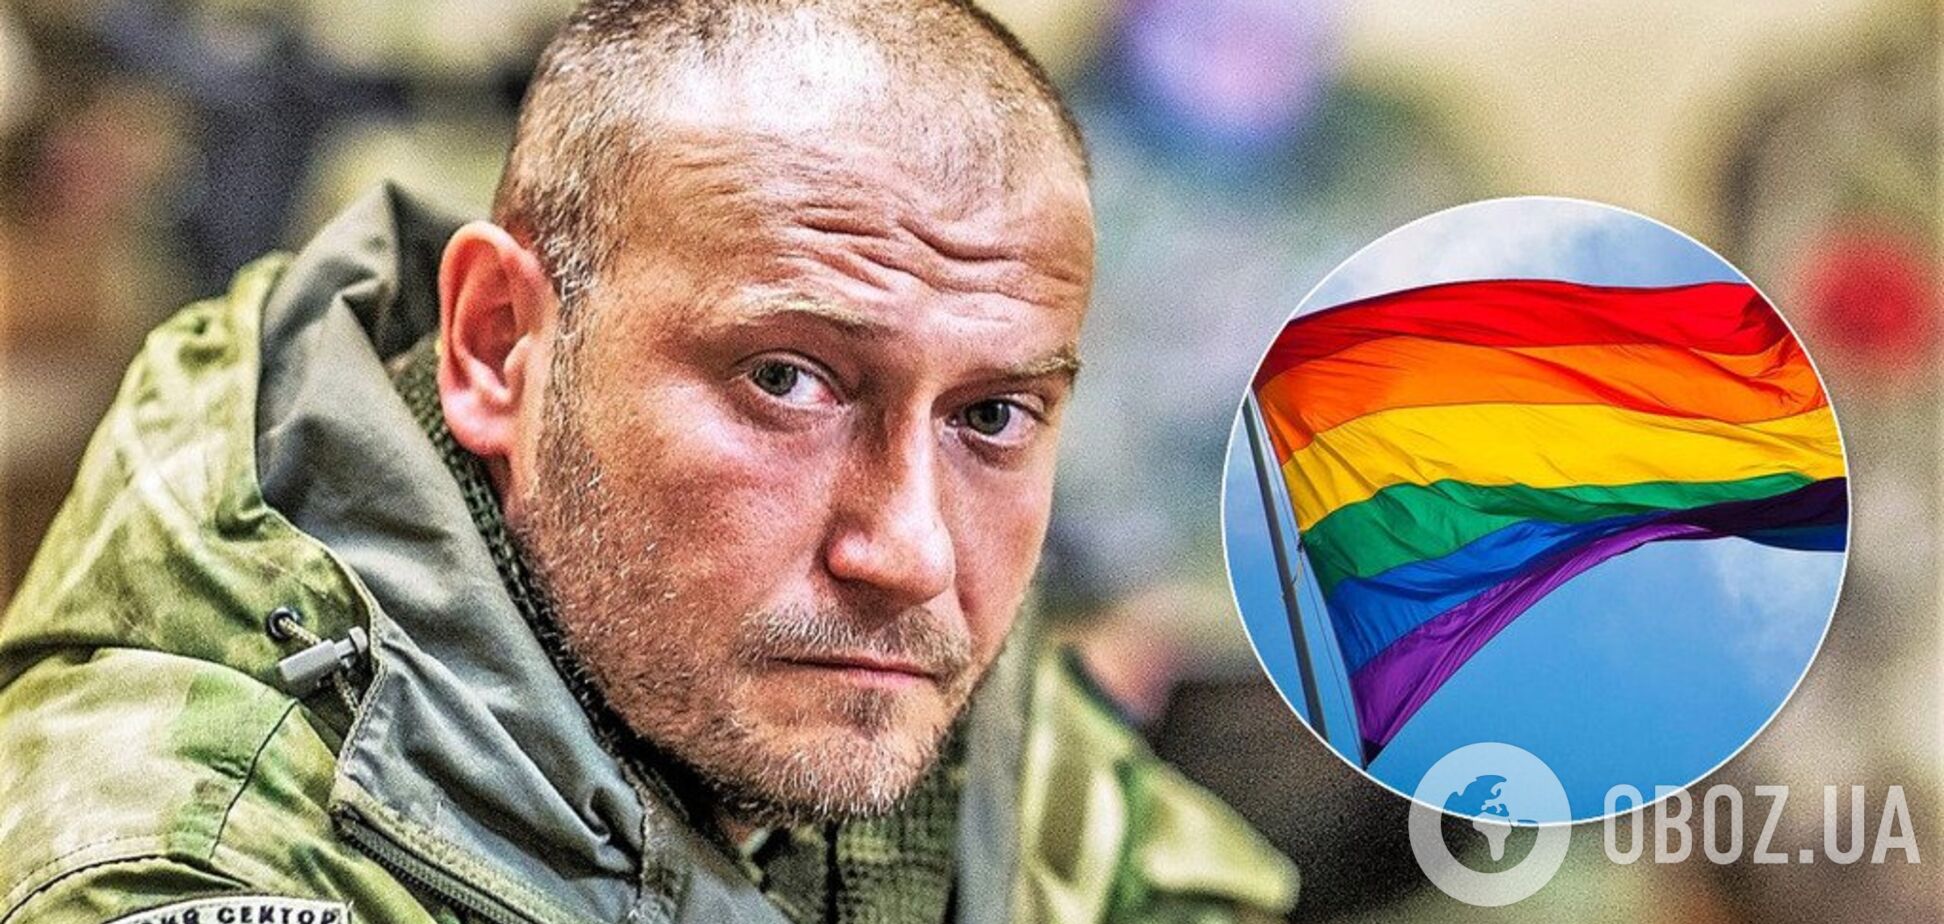 Ярош выдал очередную порцию гомофобии